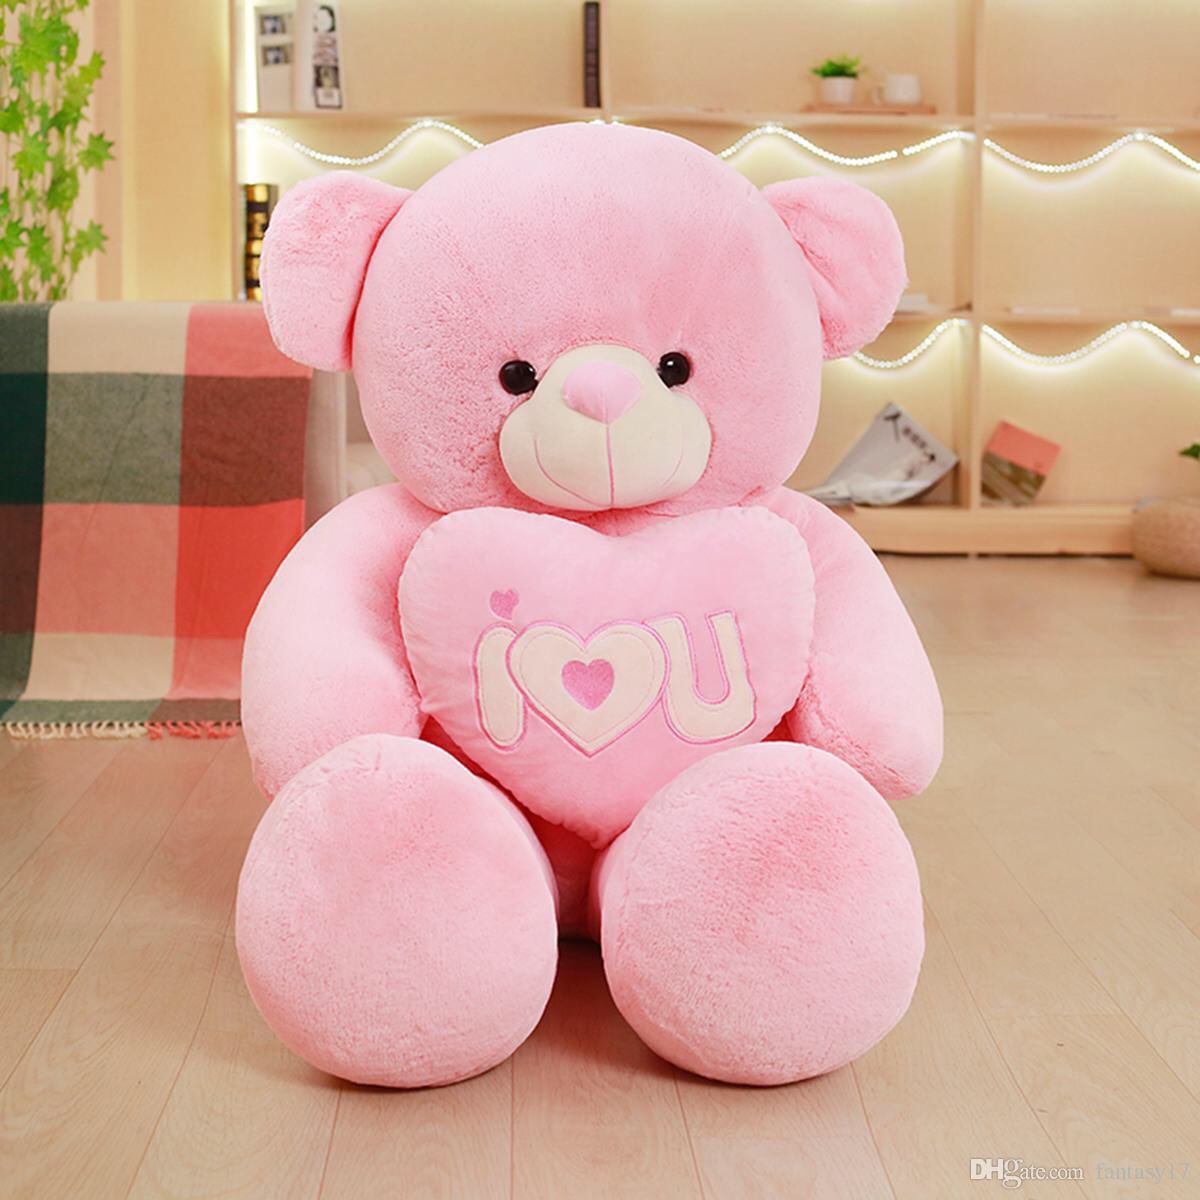 Розовый мишка игрушка. Розовый плюшевый медведь. Большой розовый медведь игрушка. Розовый мишка. Большой плюшевый медведь розовый.